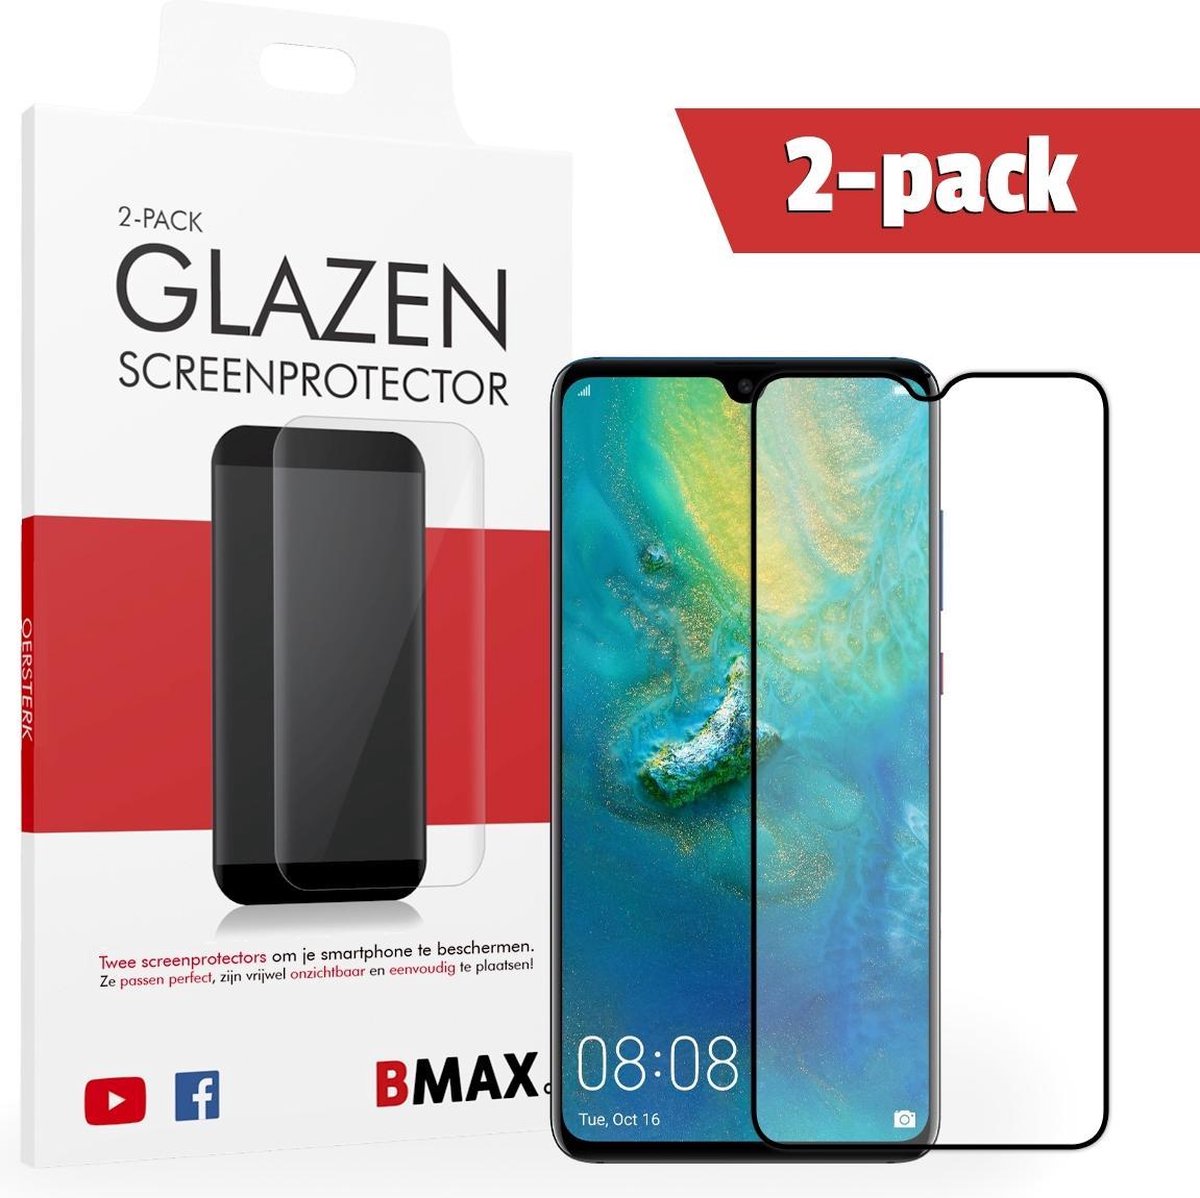 2-pack Bmax Huawei Mate 20 Screenprotector - Glass - Full Cover 5d